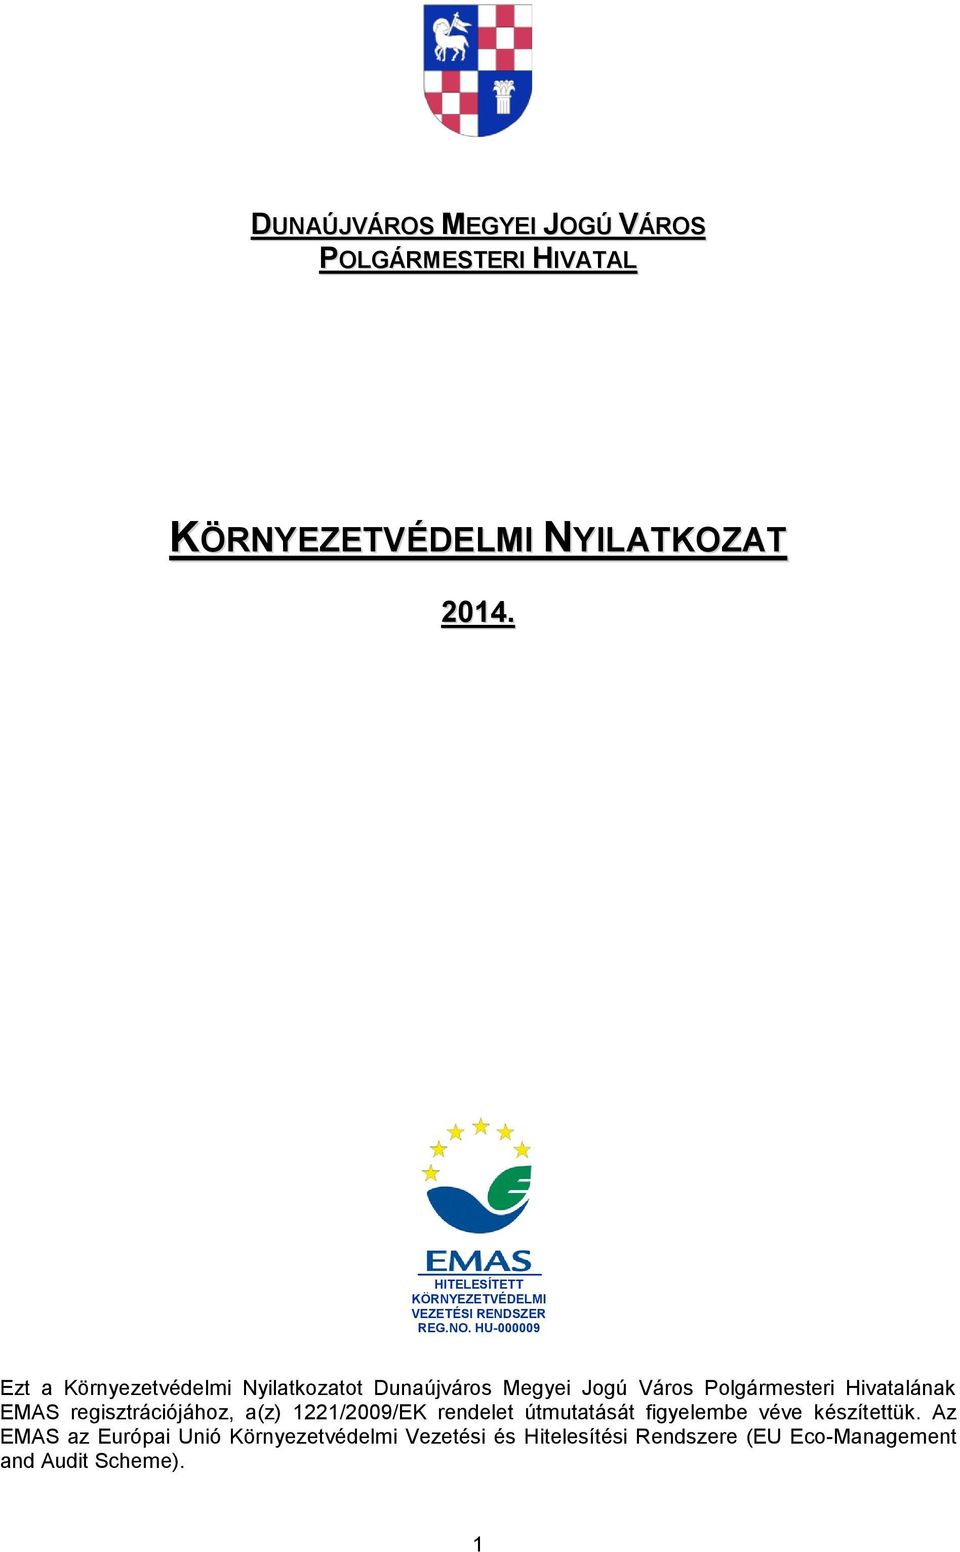 HU-000009 Ezt a Környezetvédelmi Nyilatkozatot Dunaújváros Megyei Jogú Város Polgármesteri Hivatalának EMAS